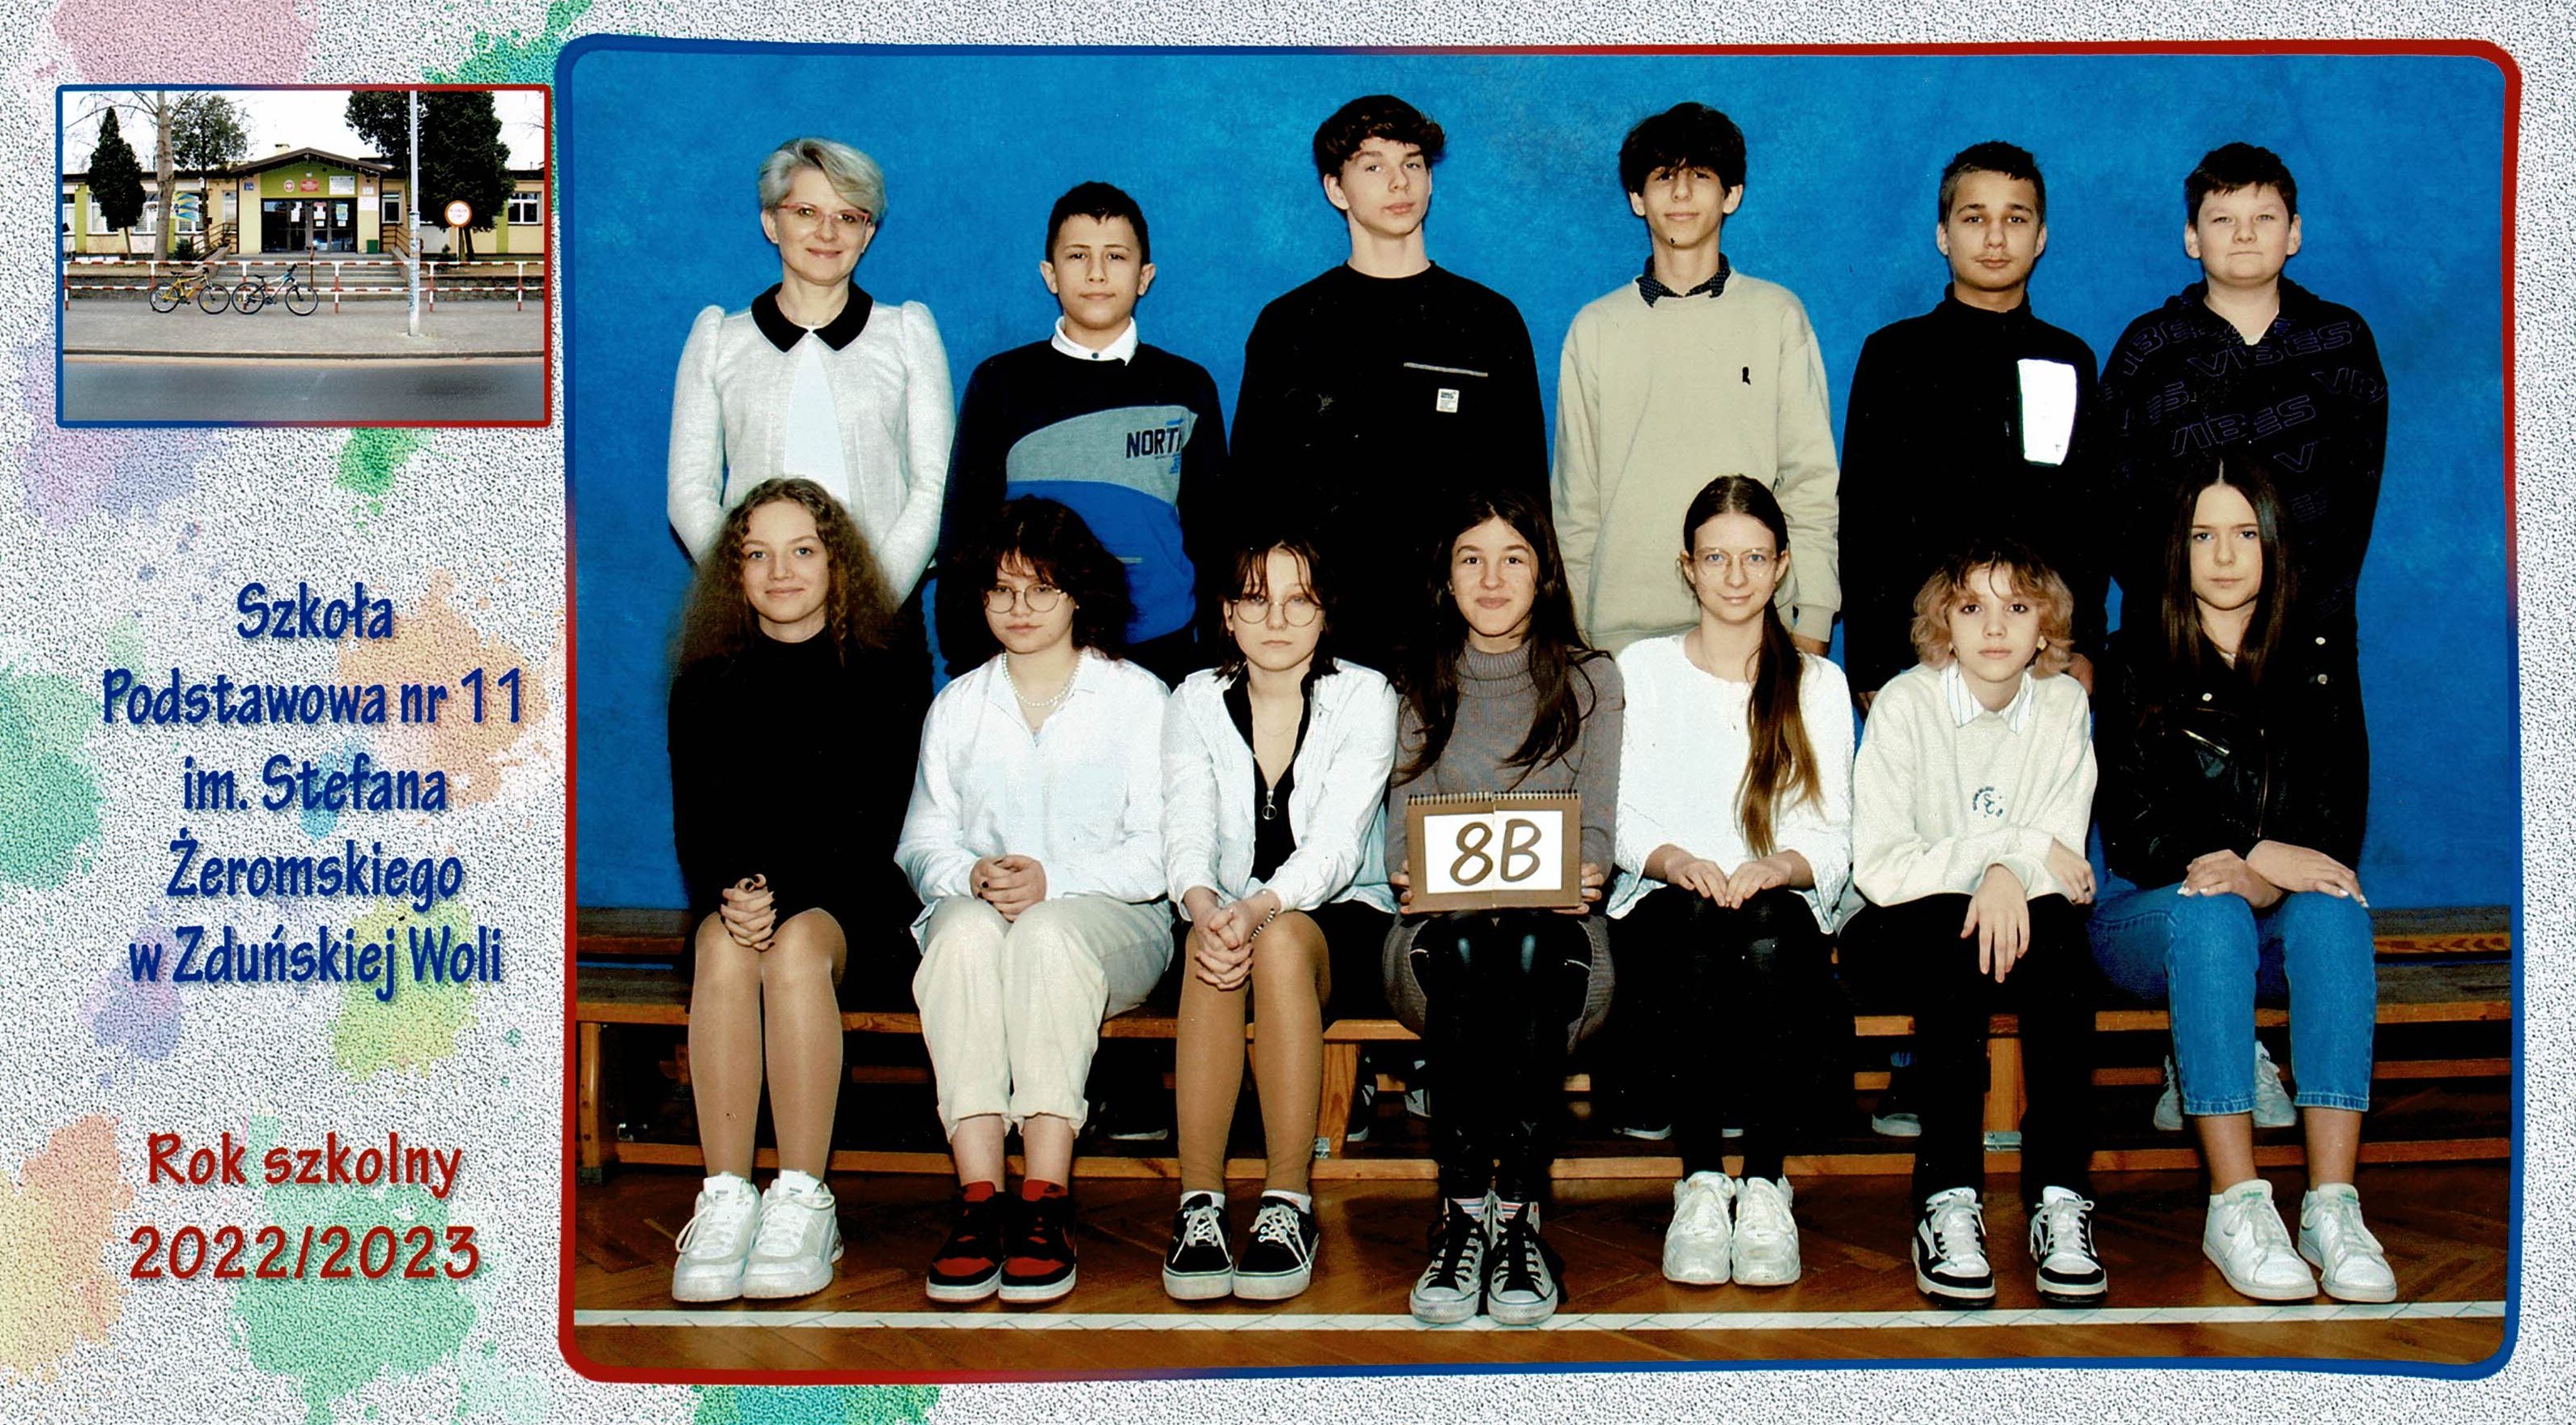 Uczniowie klasy 8b, dziewczynki i chłopcy siedzący na ławce z tabliczką "klasa 8b"